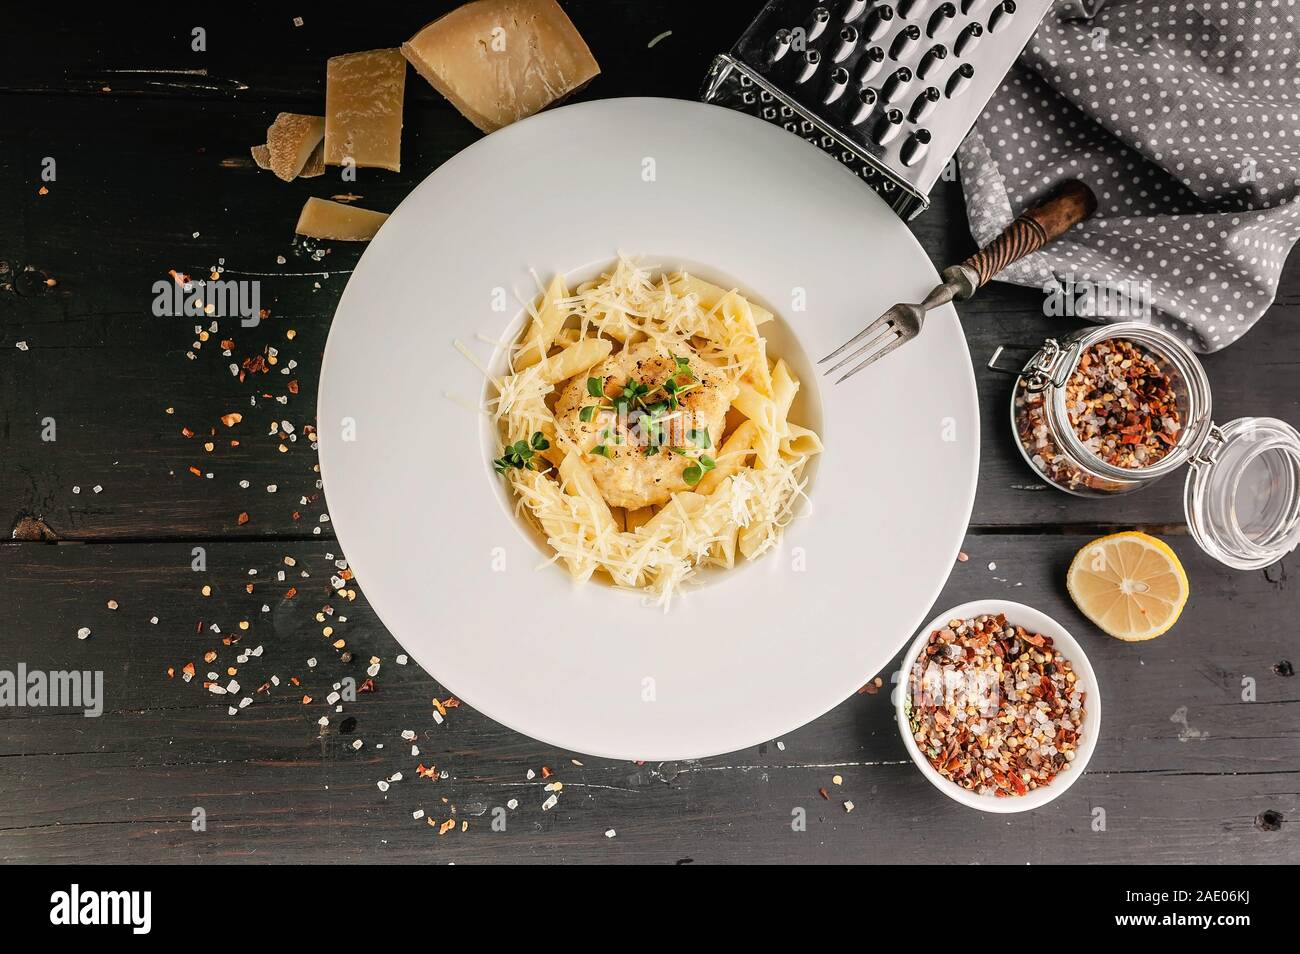 Fotografia di cibo: Smerlo con pasta italiana. Ricette di cucina mediterranea. Piatti a base di frutti di mare freschi. Vista superiore Foto Stock